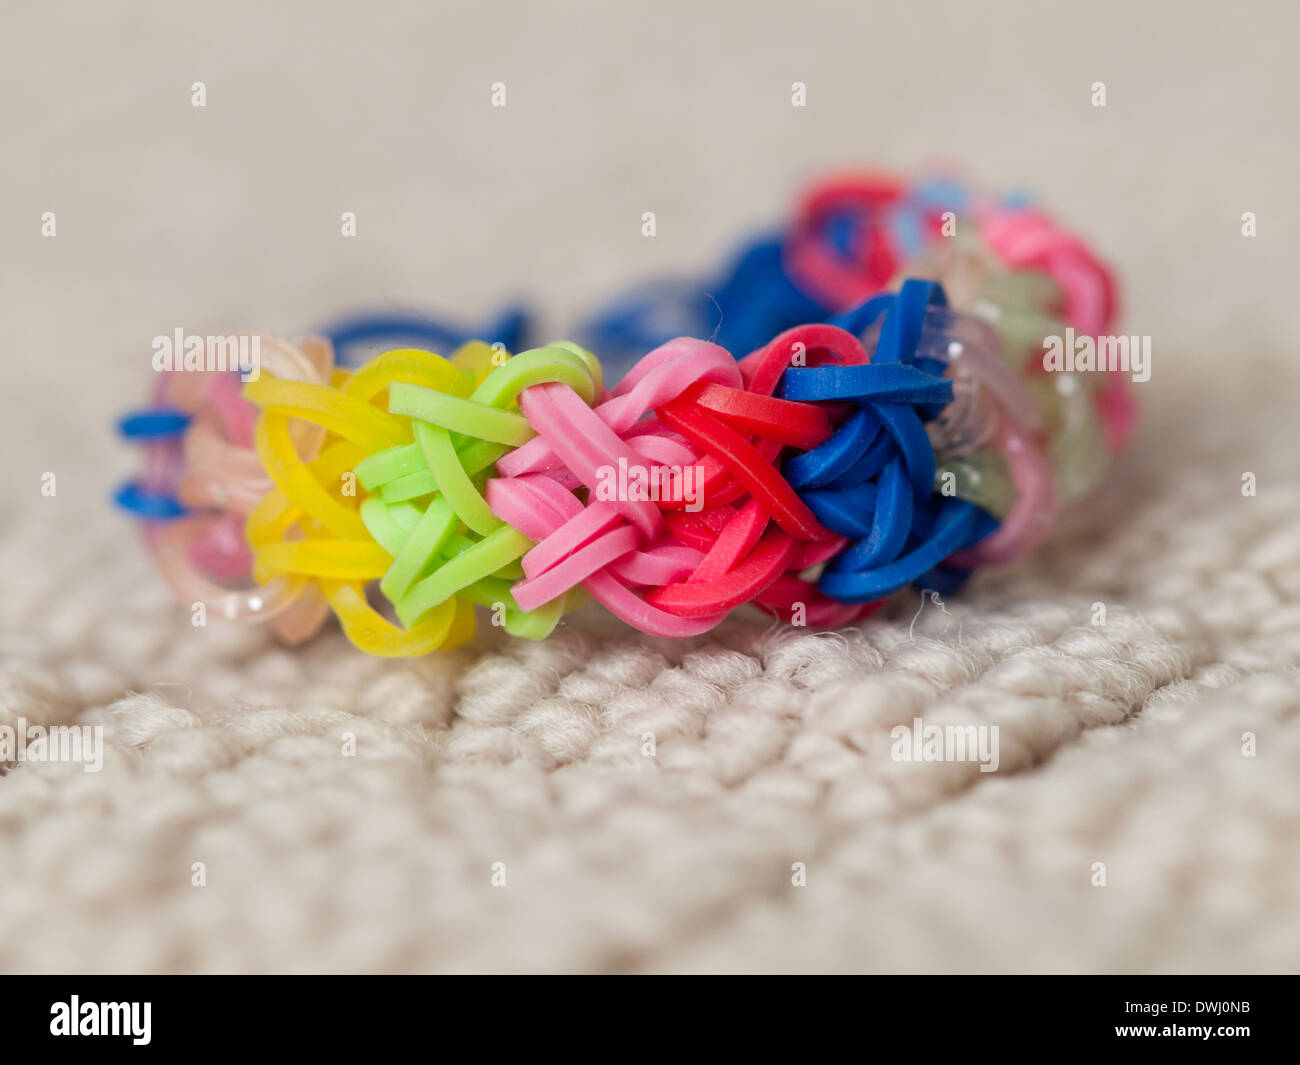 Eine Nahaufnahme von einem farbenfrohen Rainbow Loom Armband. Stockfoto